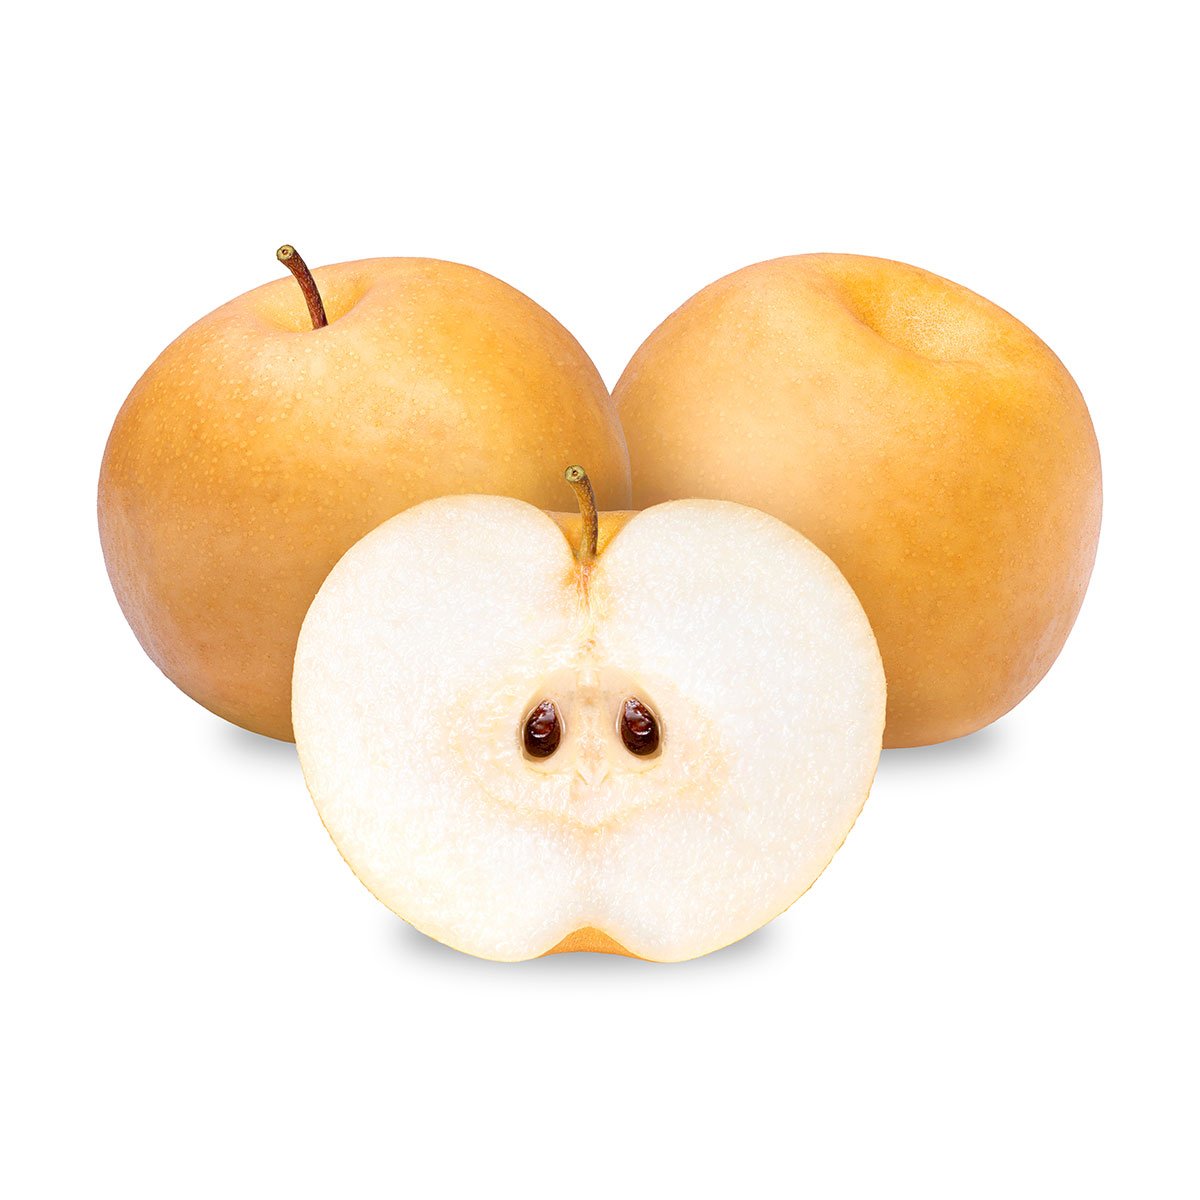 Niitaka Pears